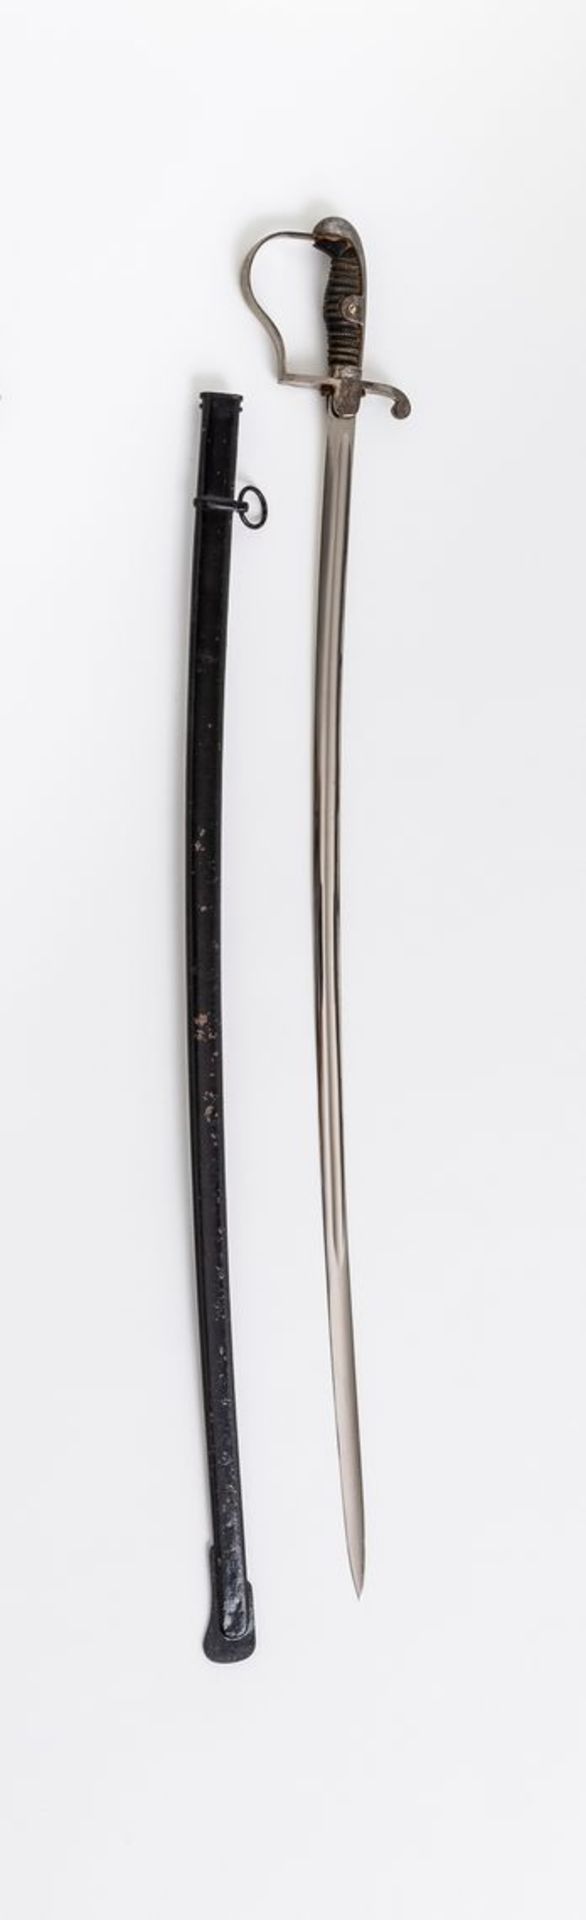 Infanterie-MannschaftssäbelStahlbügel, Bakelitgriff mit (defekter) Drahtwicklung. Sehr schöne Klinge